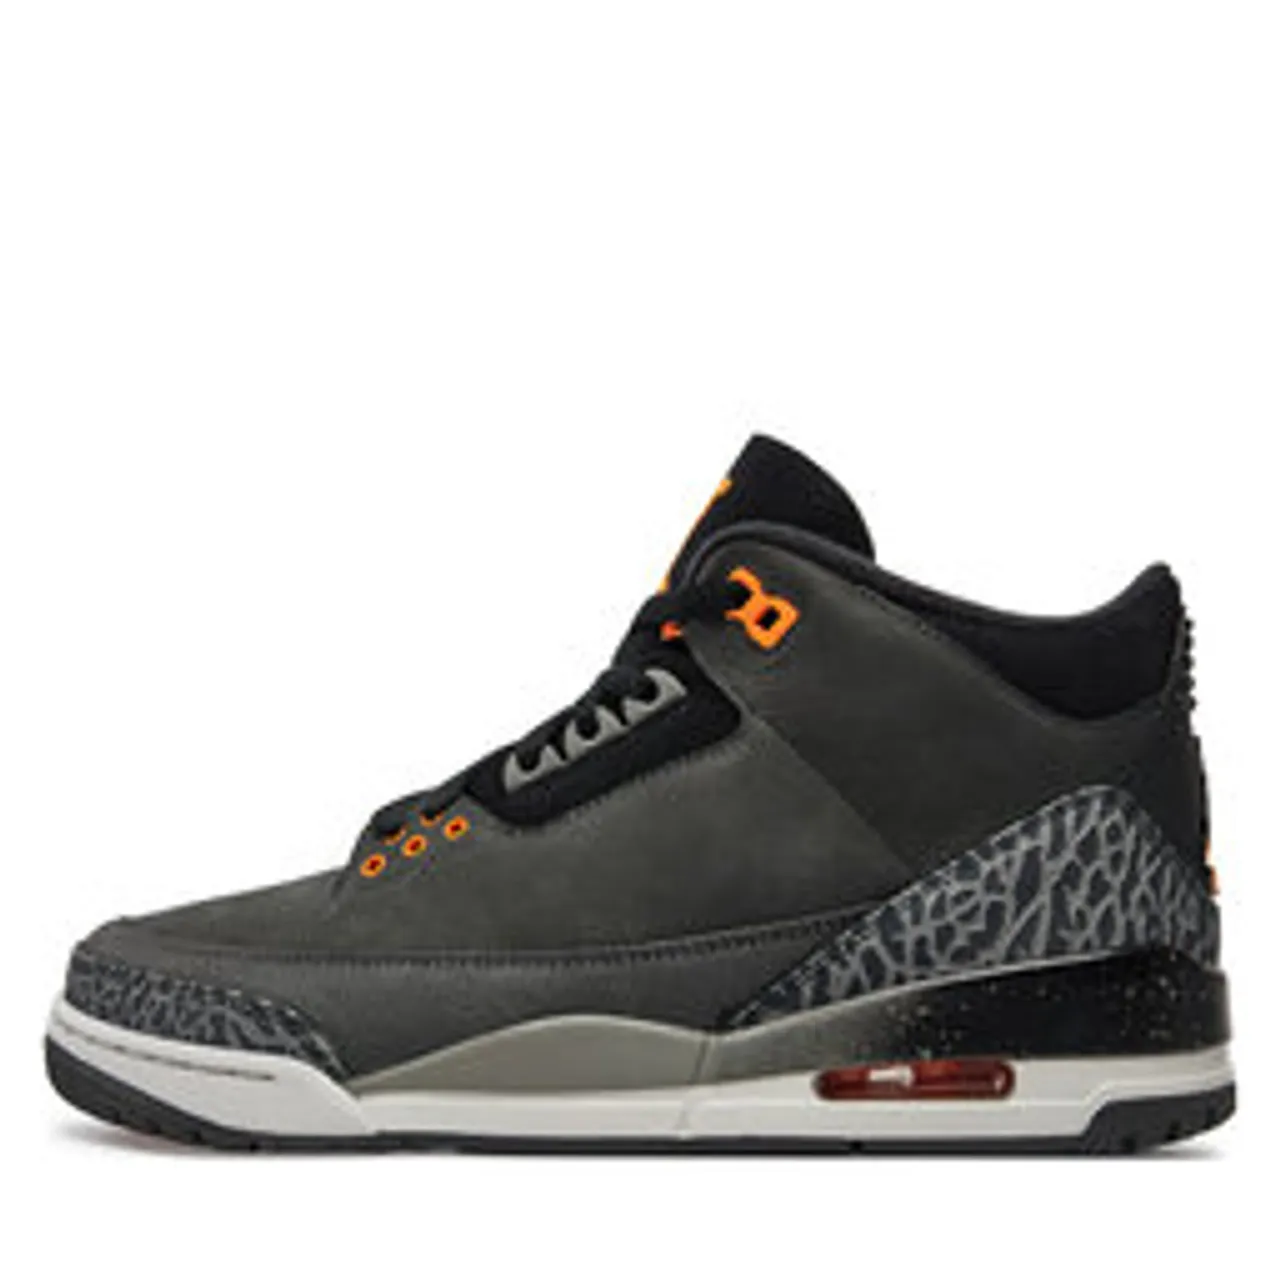 Sneakers Nike Air Jordan 3 Retro CT8532 080 Grau